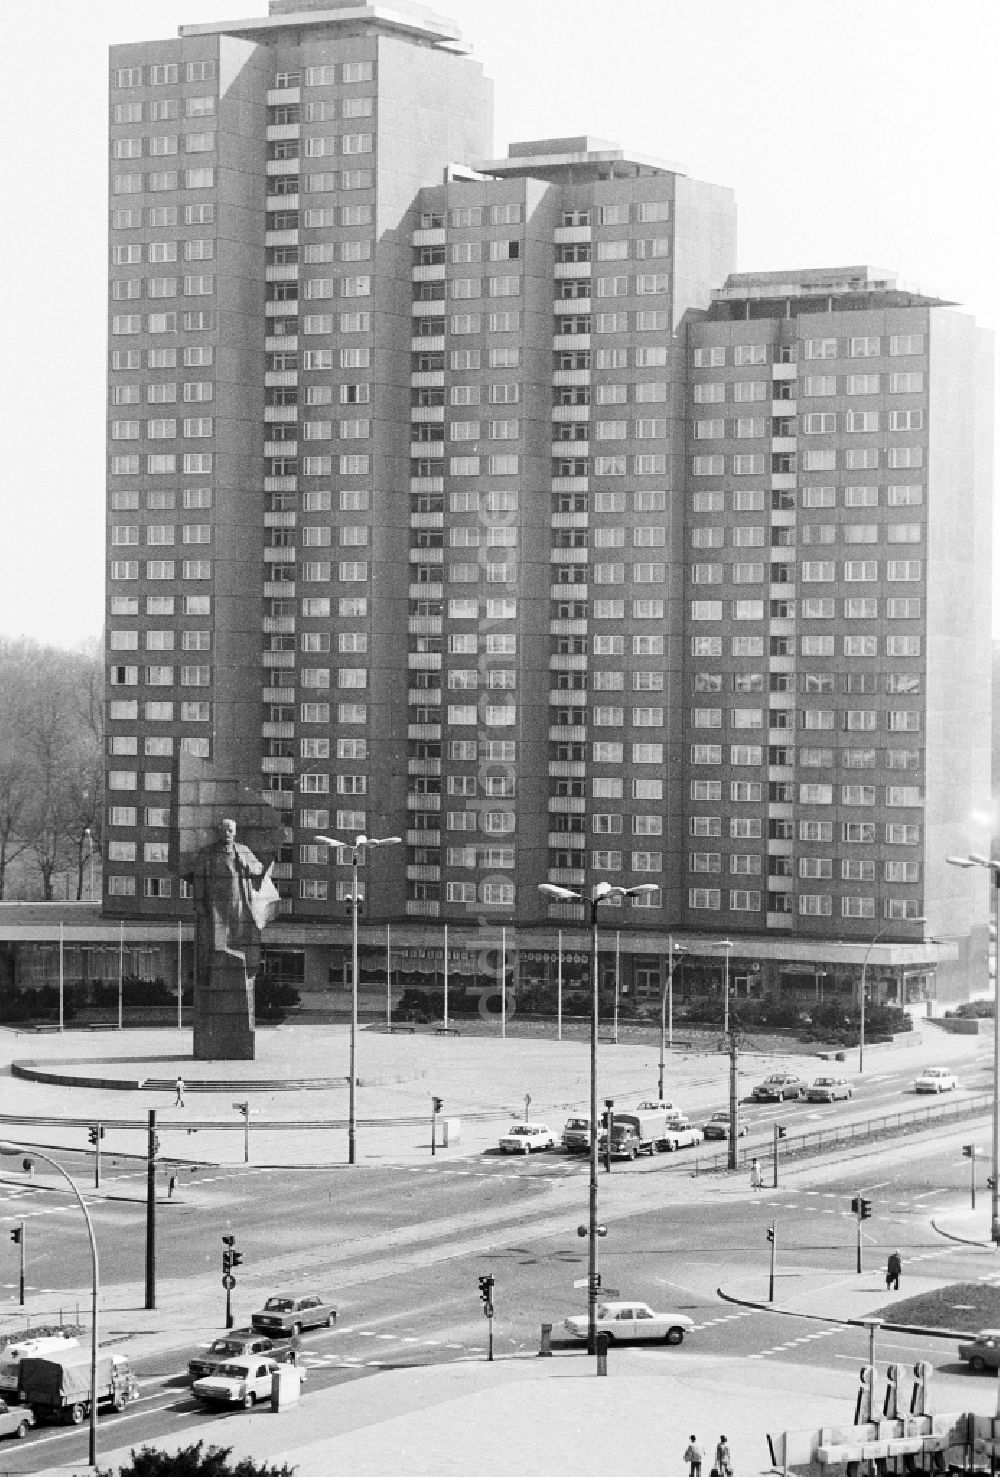 DDR-Fotoarchiv: Berlin - Leninplatz mit Lenindenkmal und Wohnhäusern in Berlin, der ehemaligen Hauptstadt der DDR, Deutsche Demokratische Republik